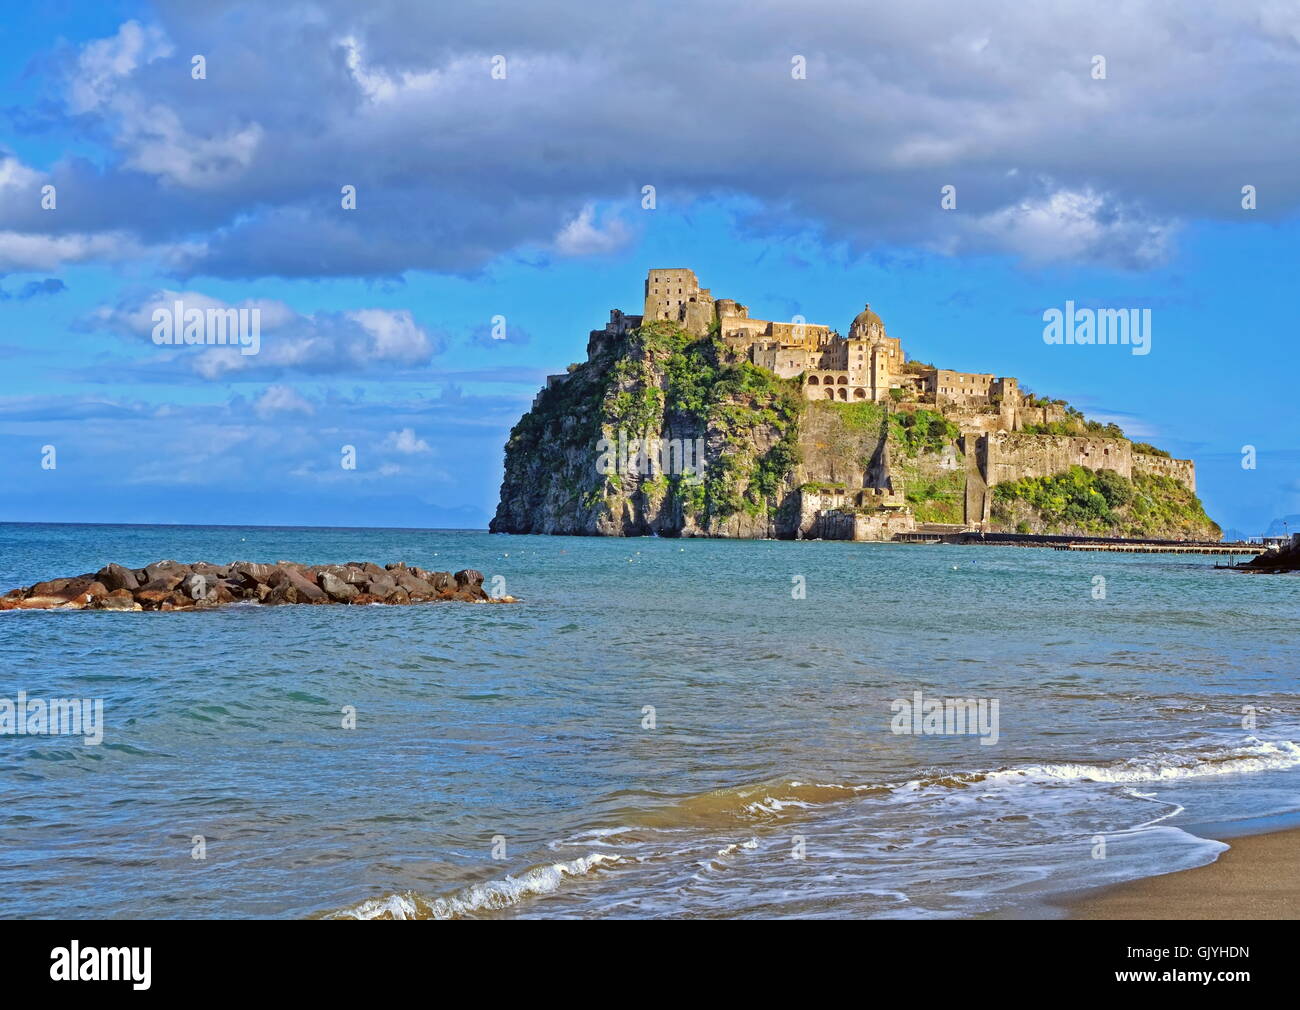 Castello Aragonese, ISCHIA, Italia Foto de stock